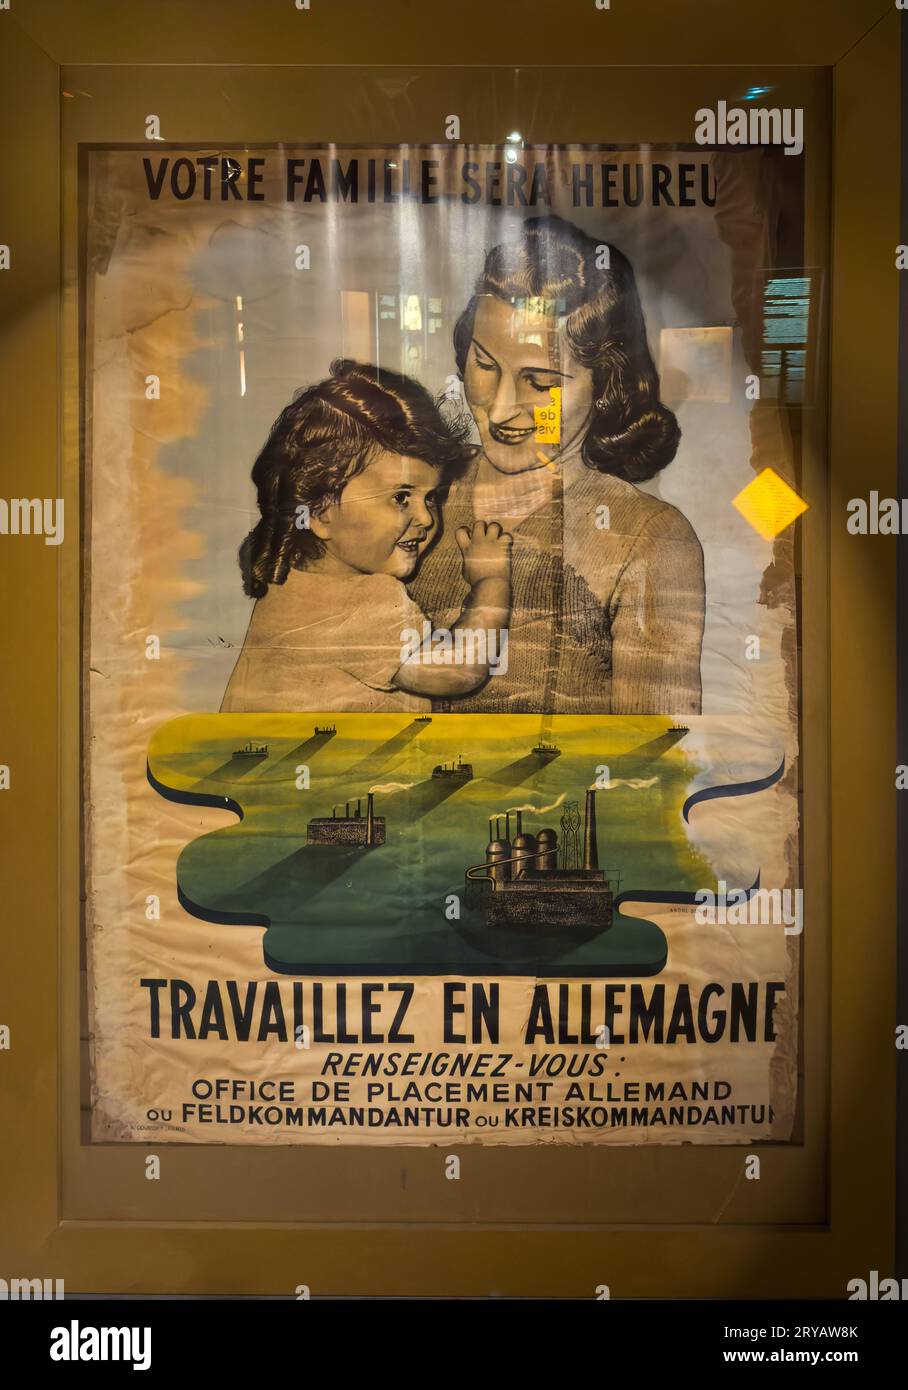 Ein deutsches Nazi-Propagandaplakat aus dem 2. Weltkrieg im Widerstands- und Deportationsmuseum in Grenoble, Frankreich, das Menschen dazu auffordert, in Fabriken zu arbeiten Stockfoto